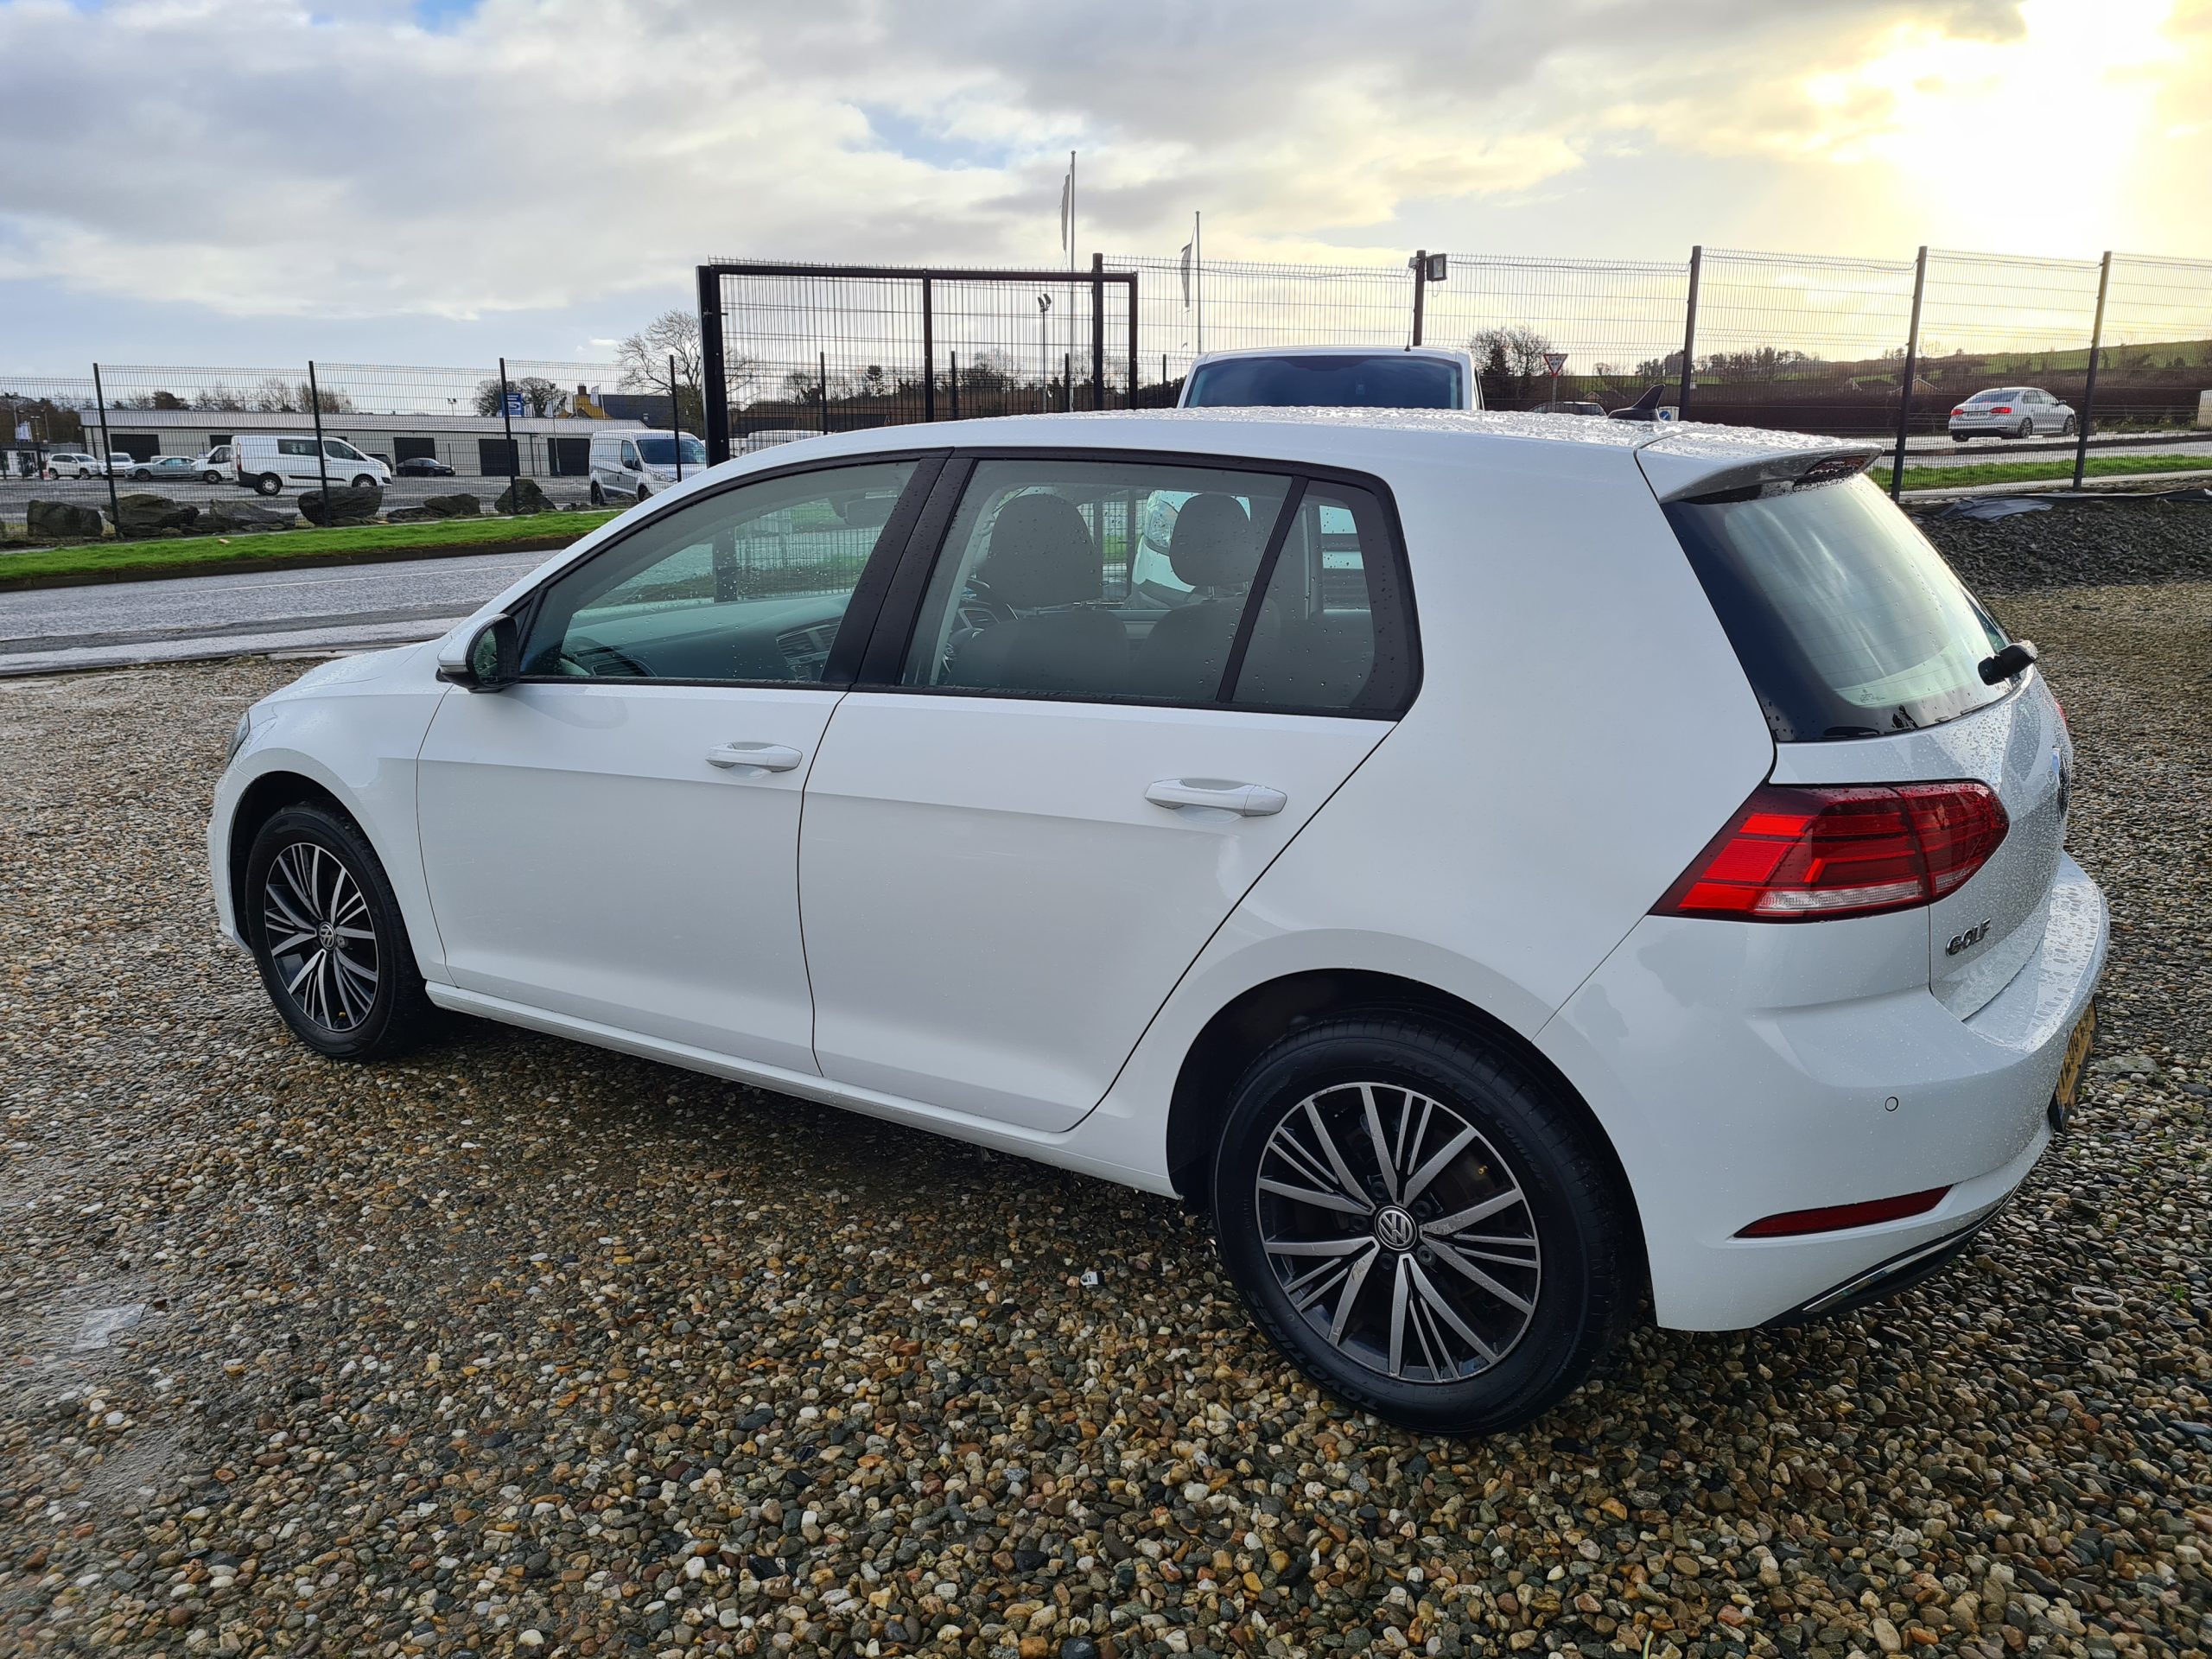 2019 Volkswagen Golf Se Navigation Tdi | Used Cars Derry Donegal